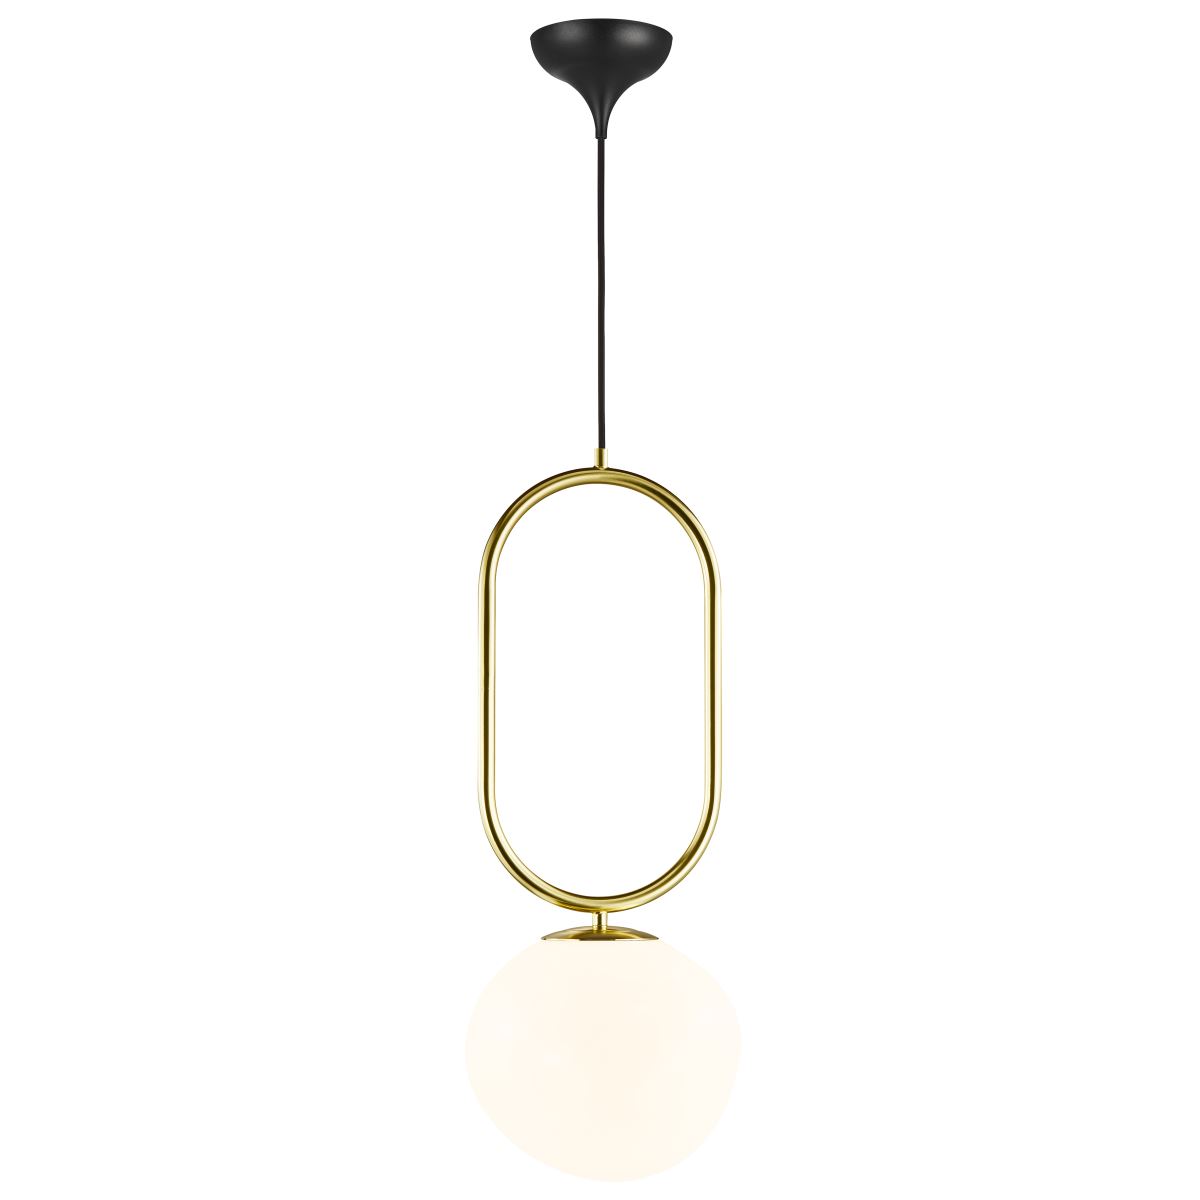 Hängelampen und andere Lampen von Design for the People. Online kaufen bei  Möbel &